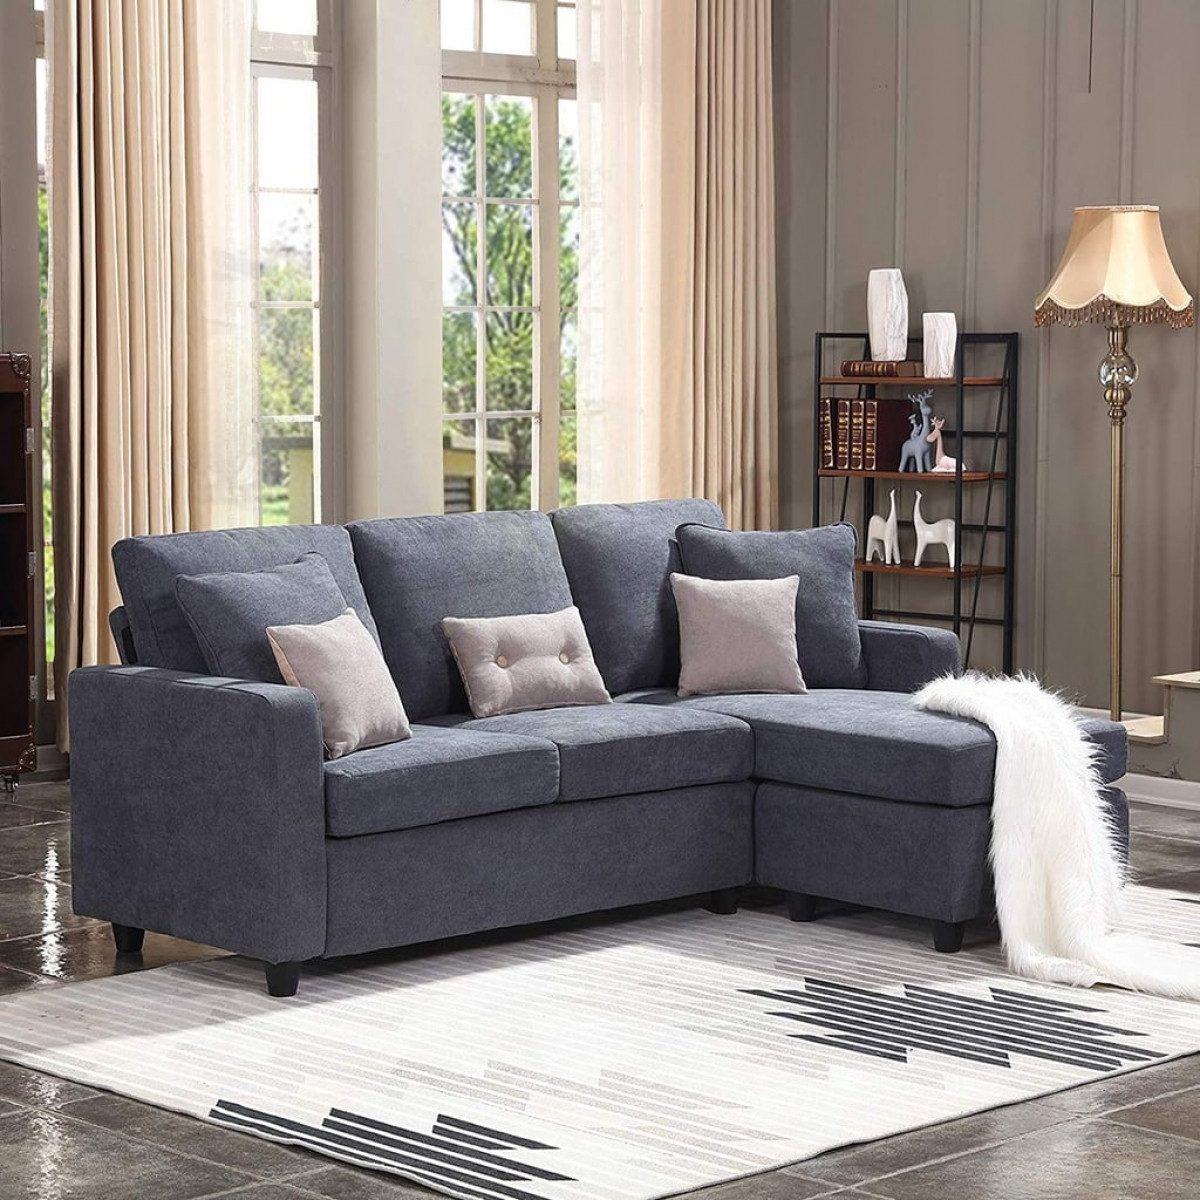 Chất liệu sofa cũng là điều cần quan tâm. Bạn có thể chọn những chiếc sofa chắc chắn với phần đệm dày để đảm bảo sự ấm áp.